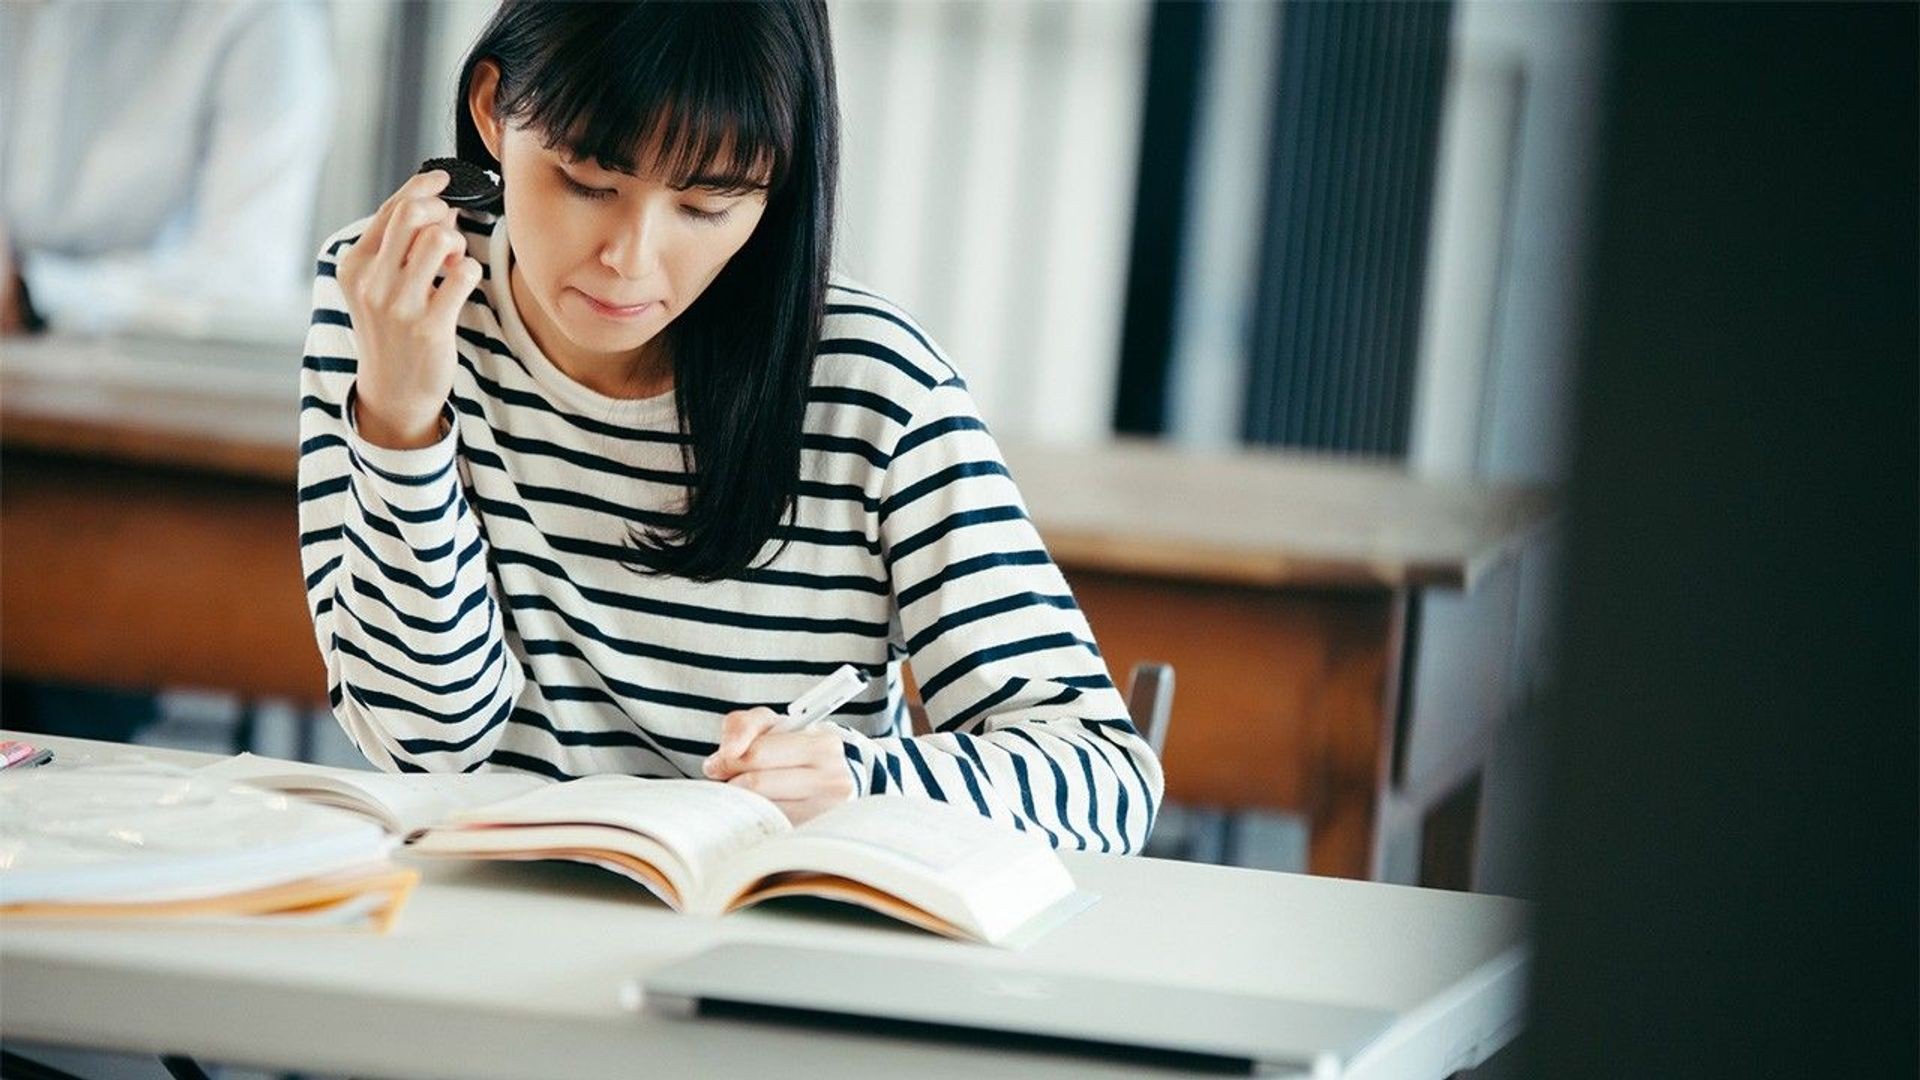 Cập nhật bảng giá học phí gỡ rối cho câu hỏi: Khóa học tiếng Nhật bao nhiêu tiền?